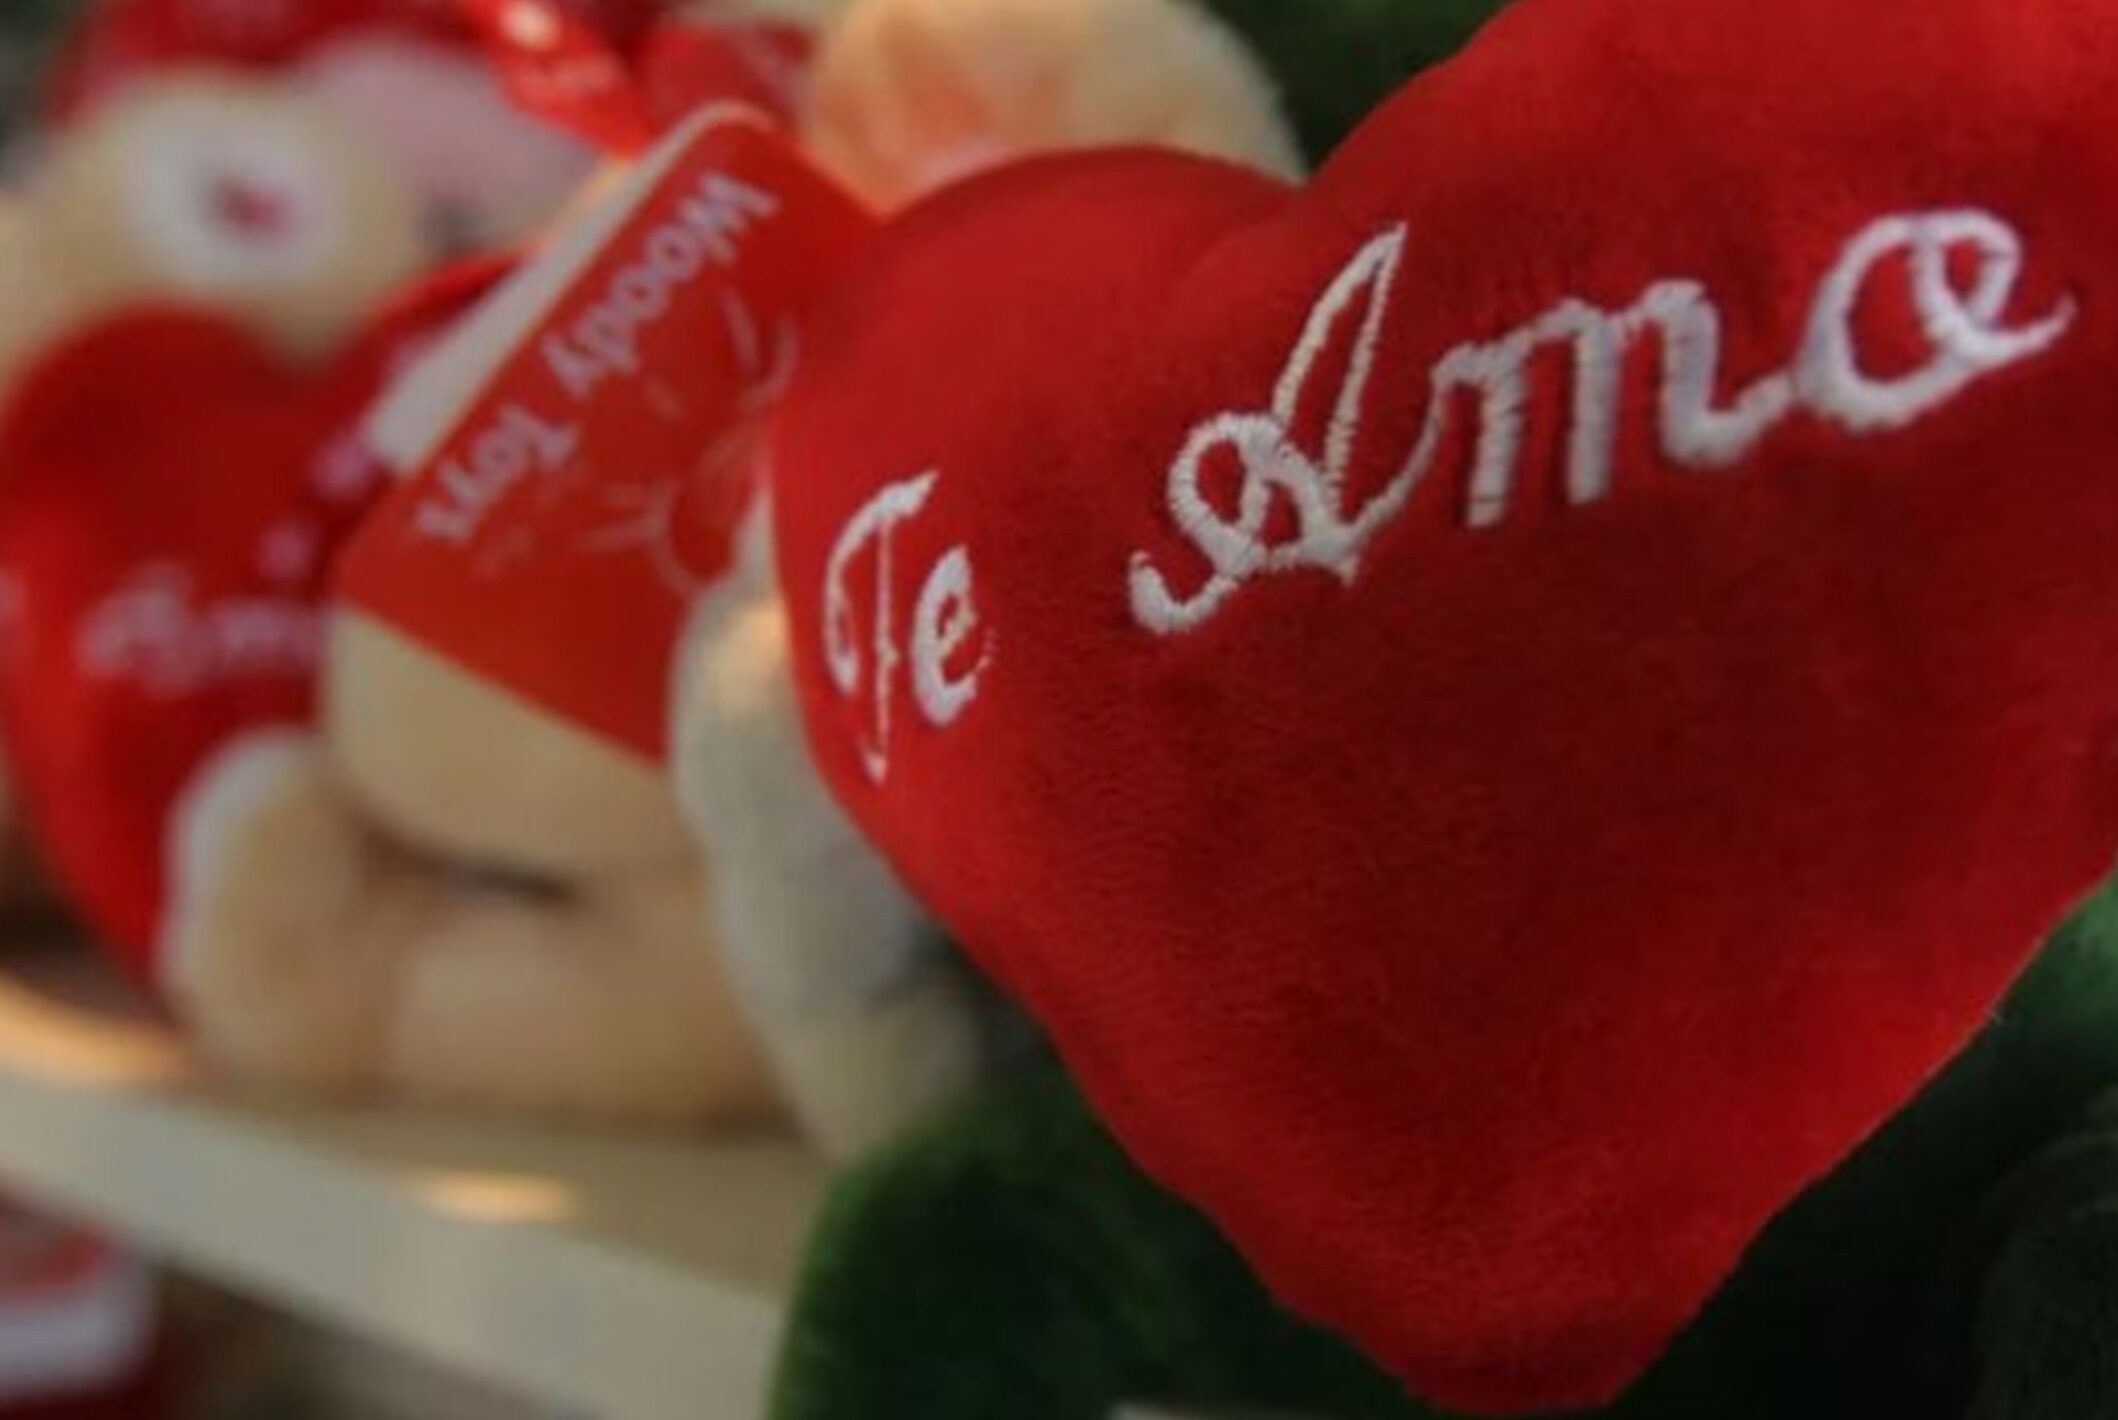 Día de los Enamorados: ¿por qué se celebra cada 14 de febrero?